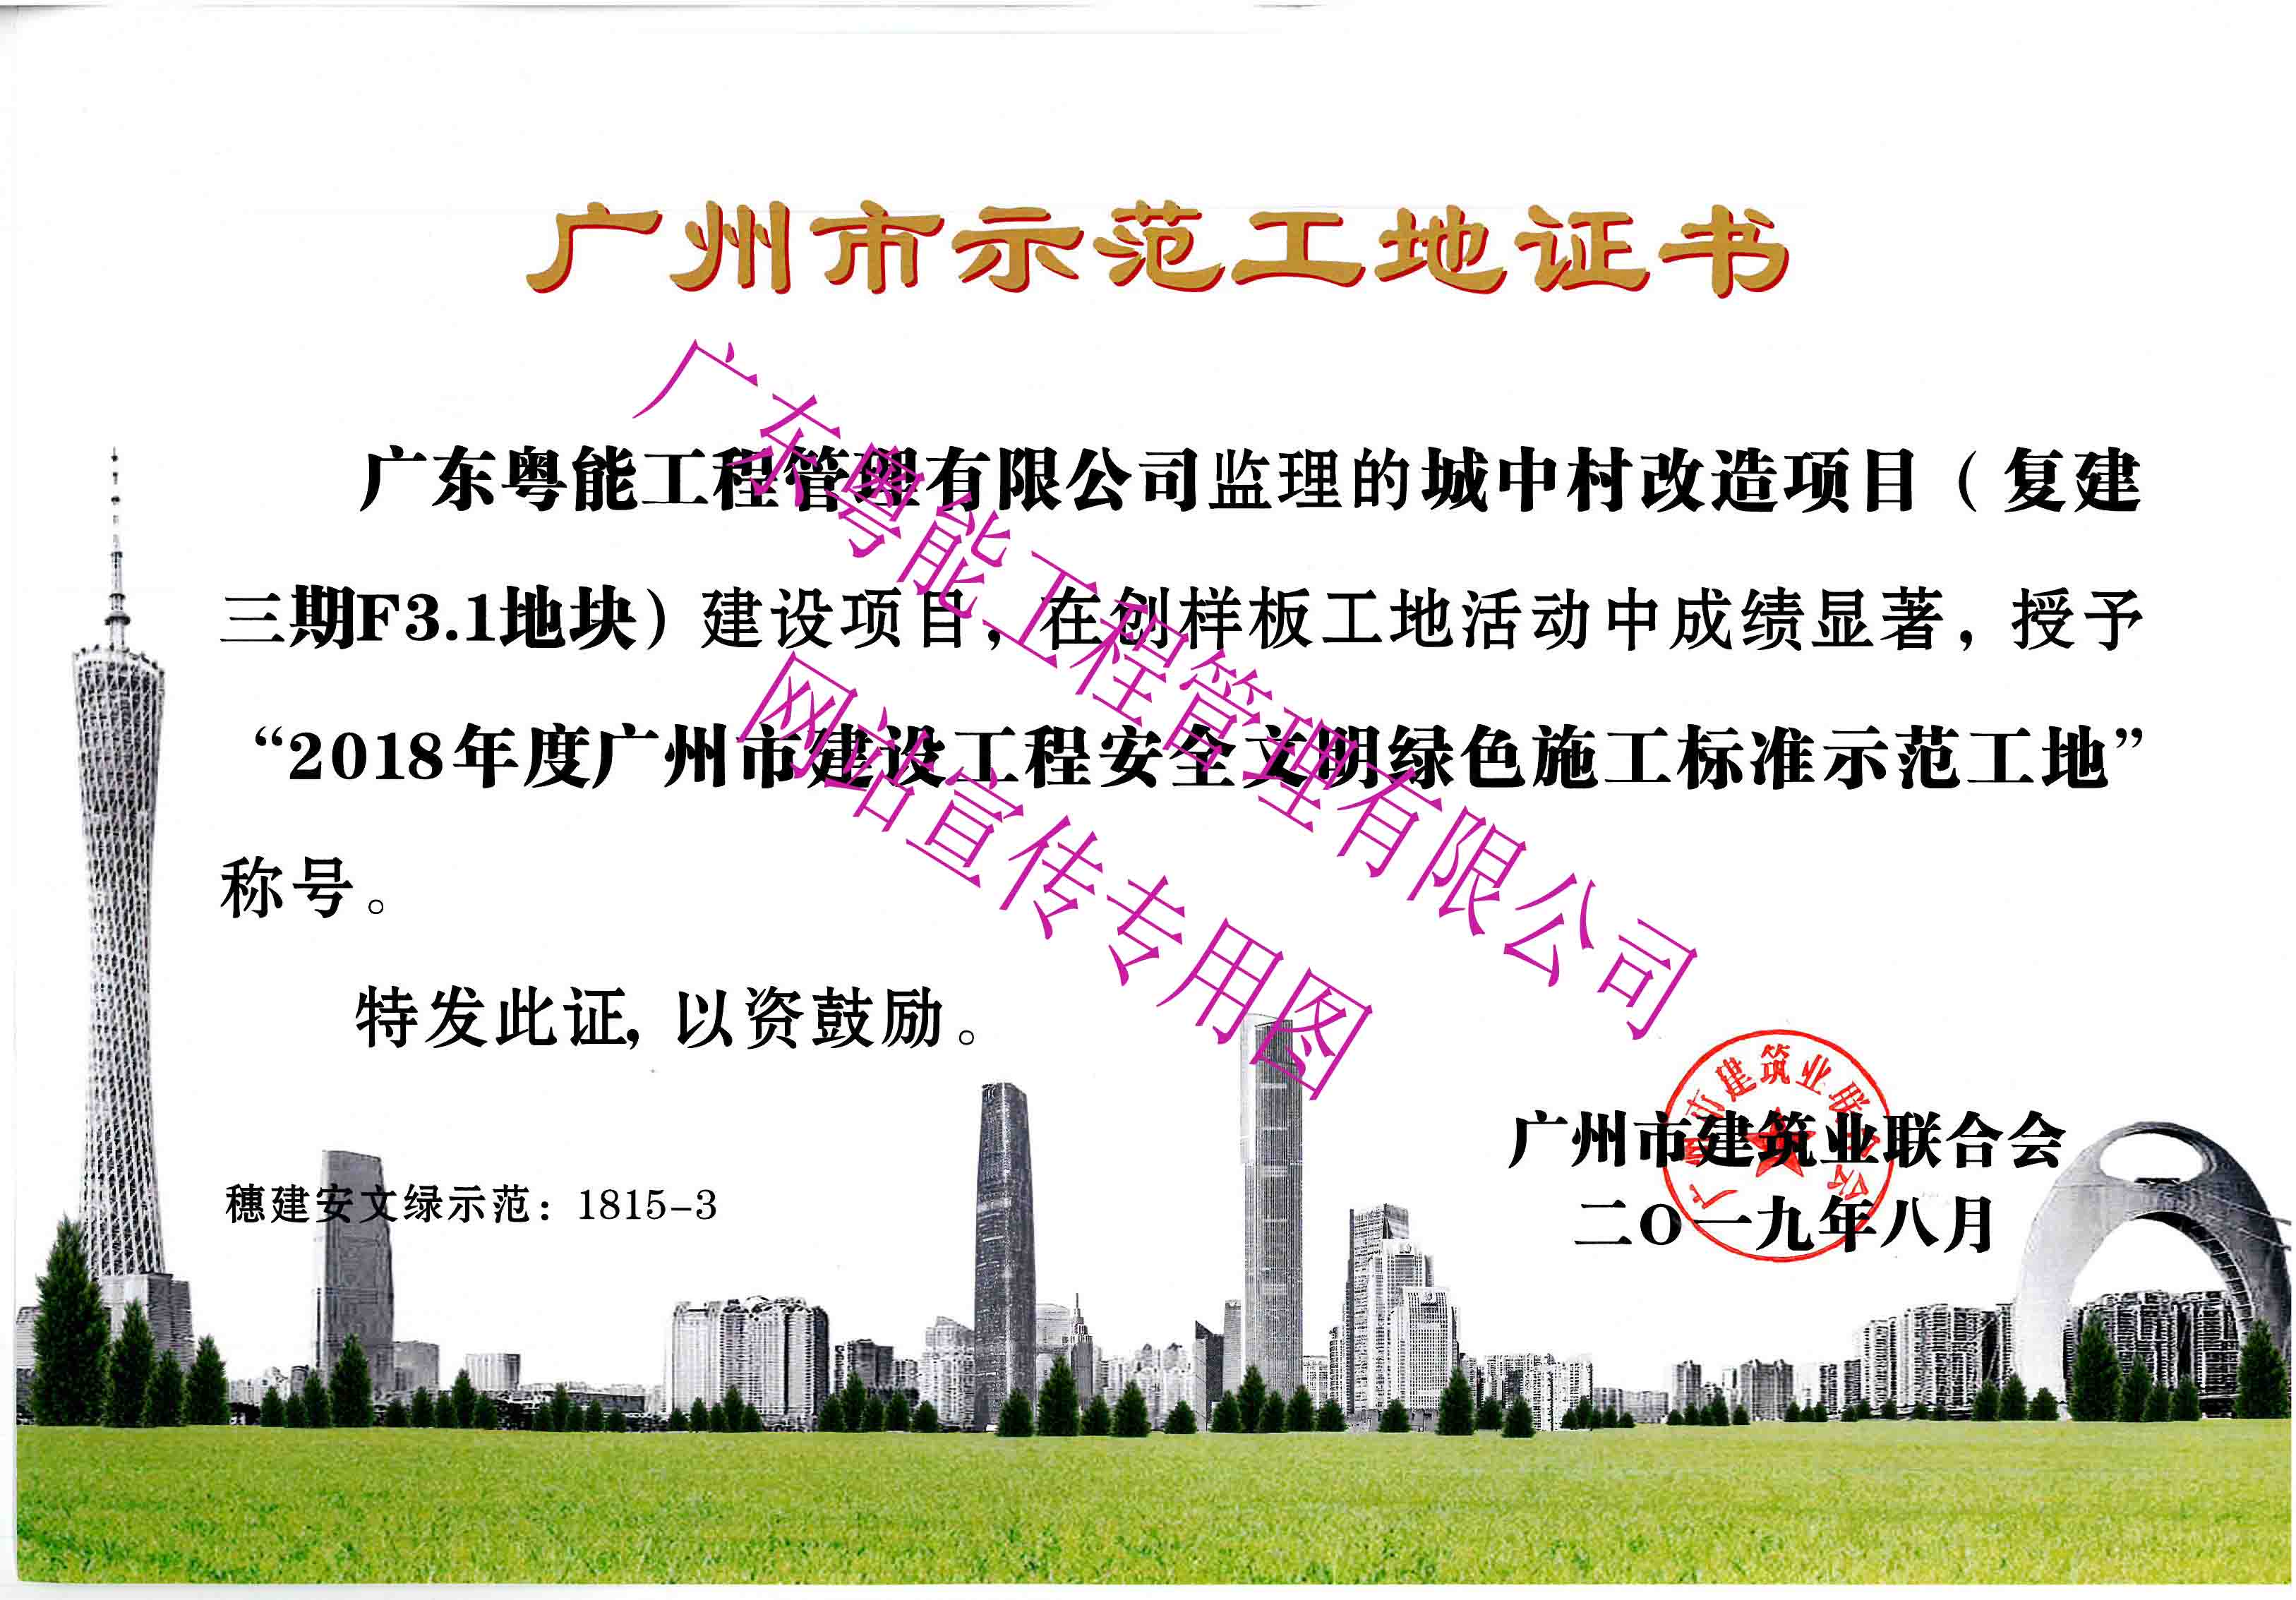 2018年度广州市建设工程安全文明绿色施工标准示范工地